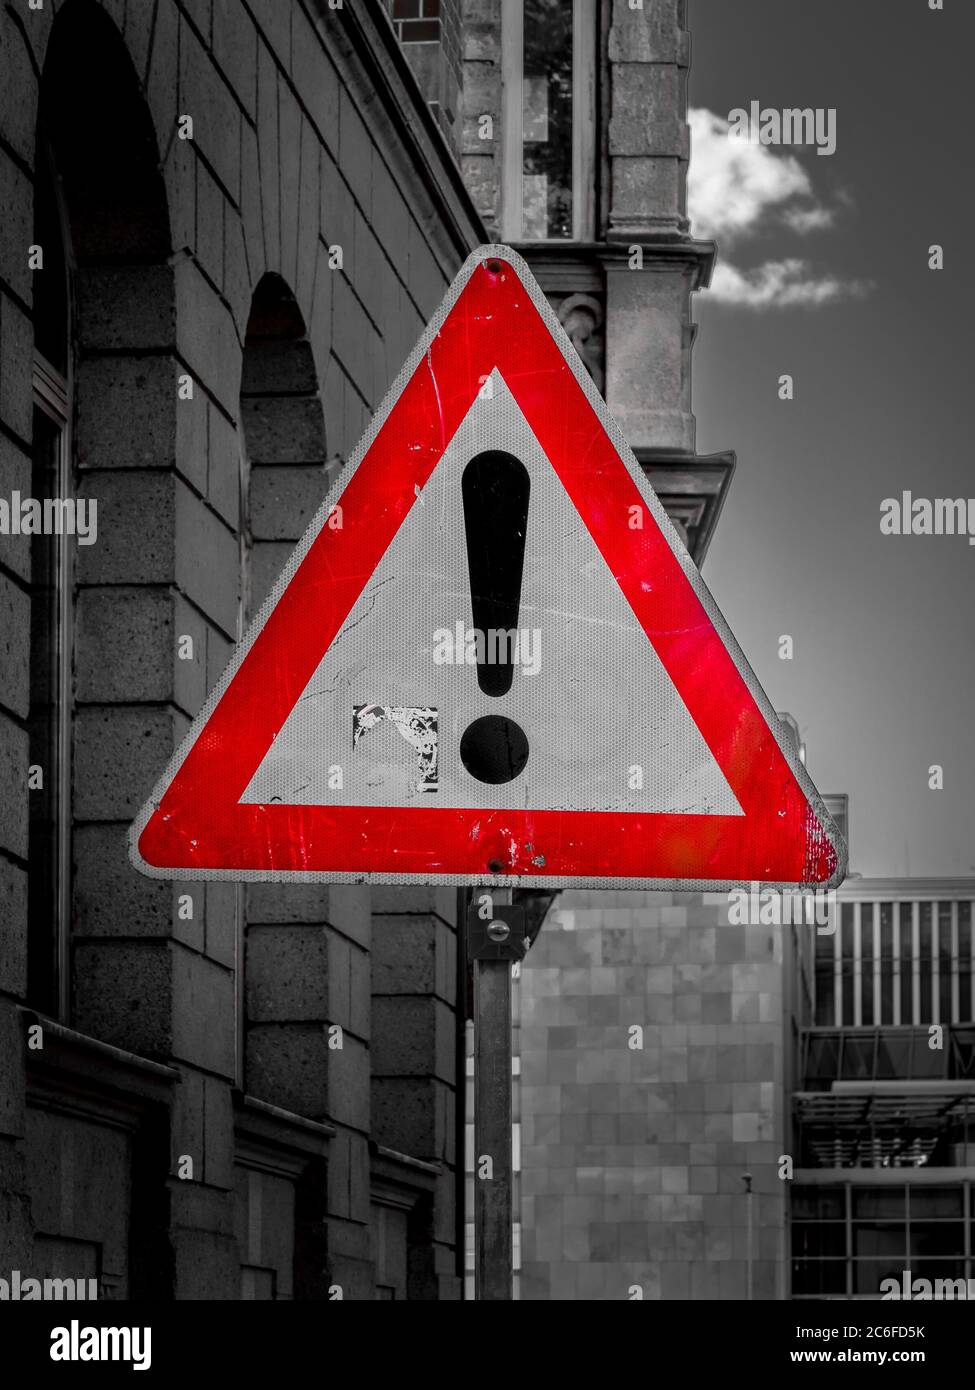 un panneau triangulaire rouge encadré avec un point d'exclamation signale un danger à côté des bâtiments. photographie en noir et blanc Banque D'Images